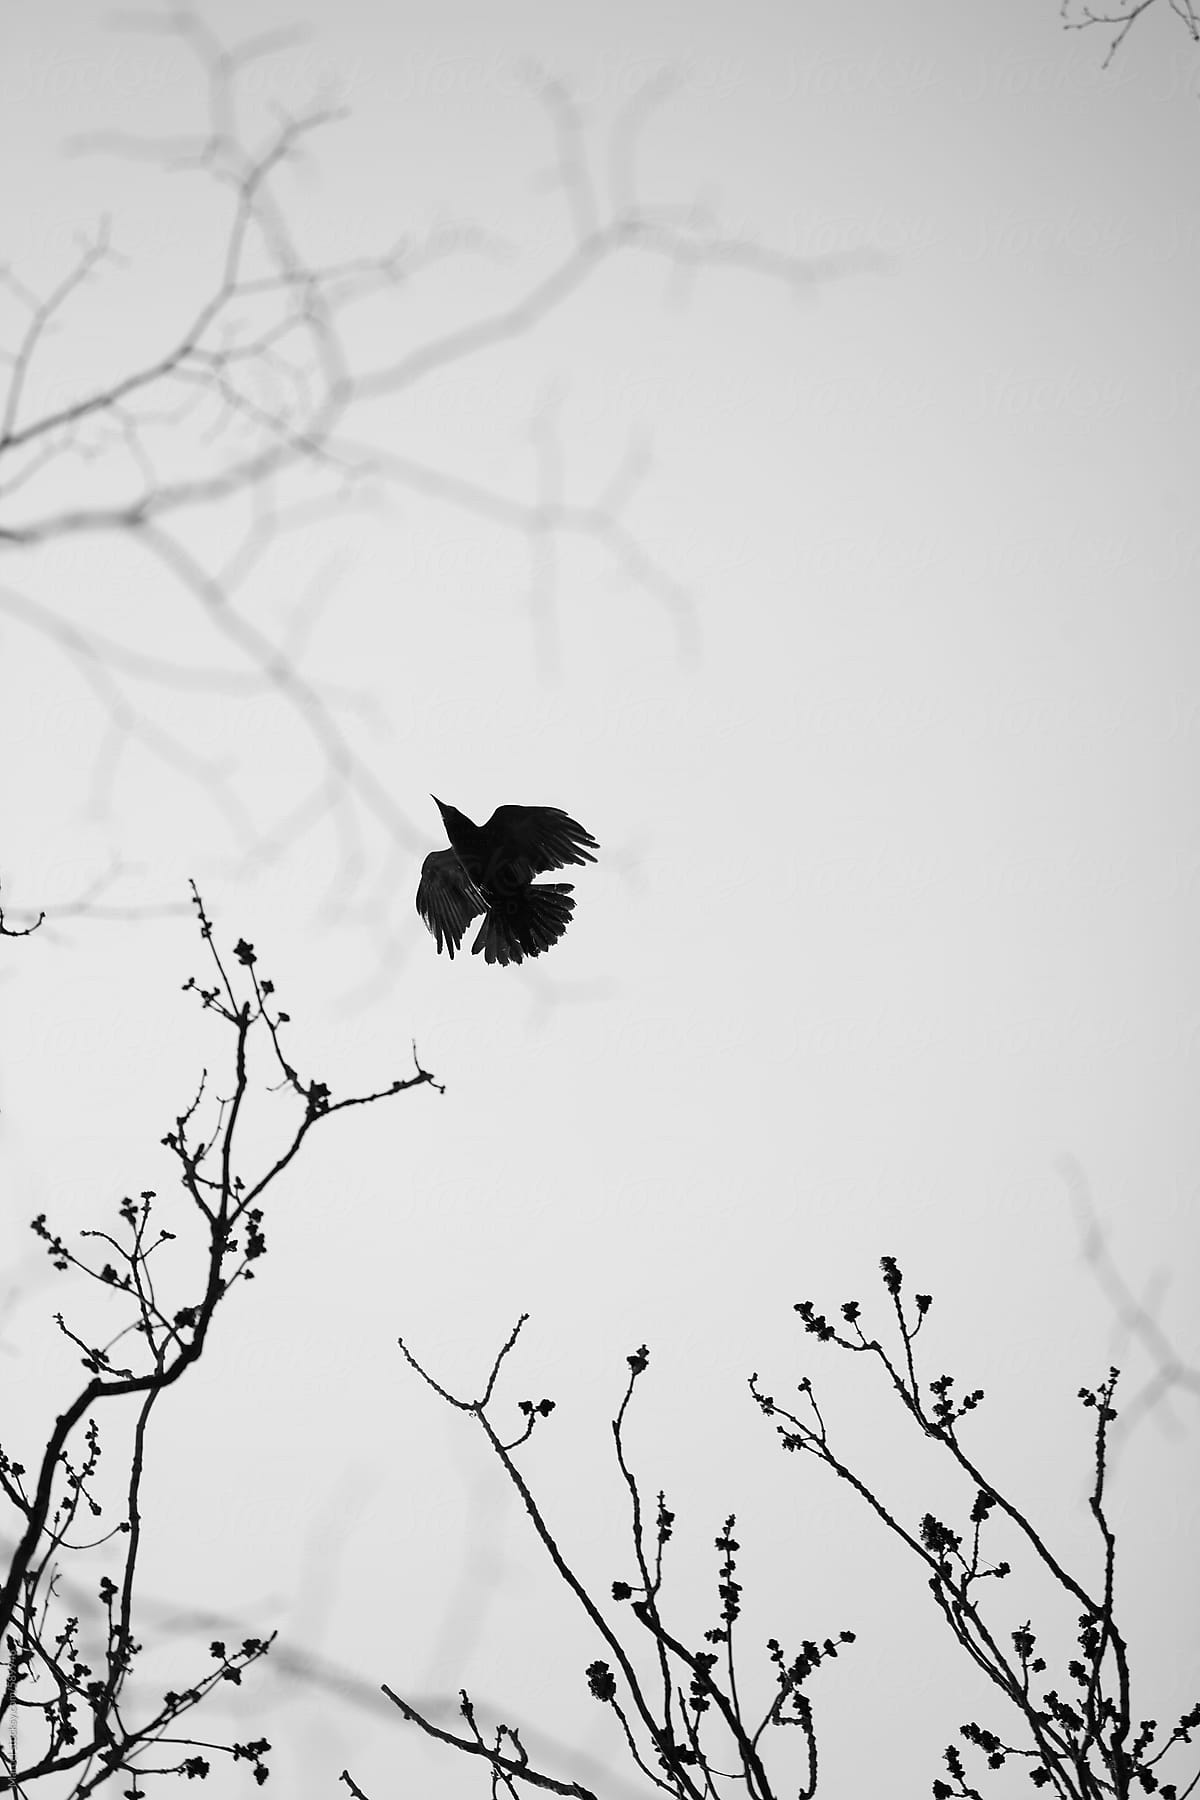 Crow in flight between tree branches